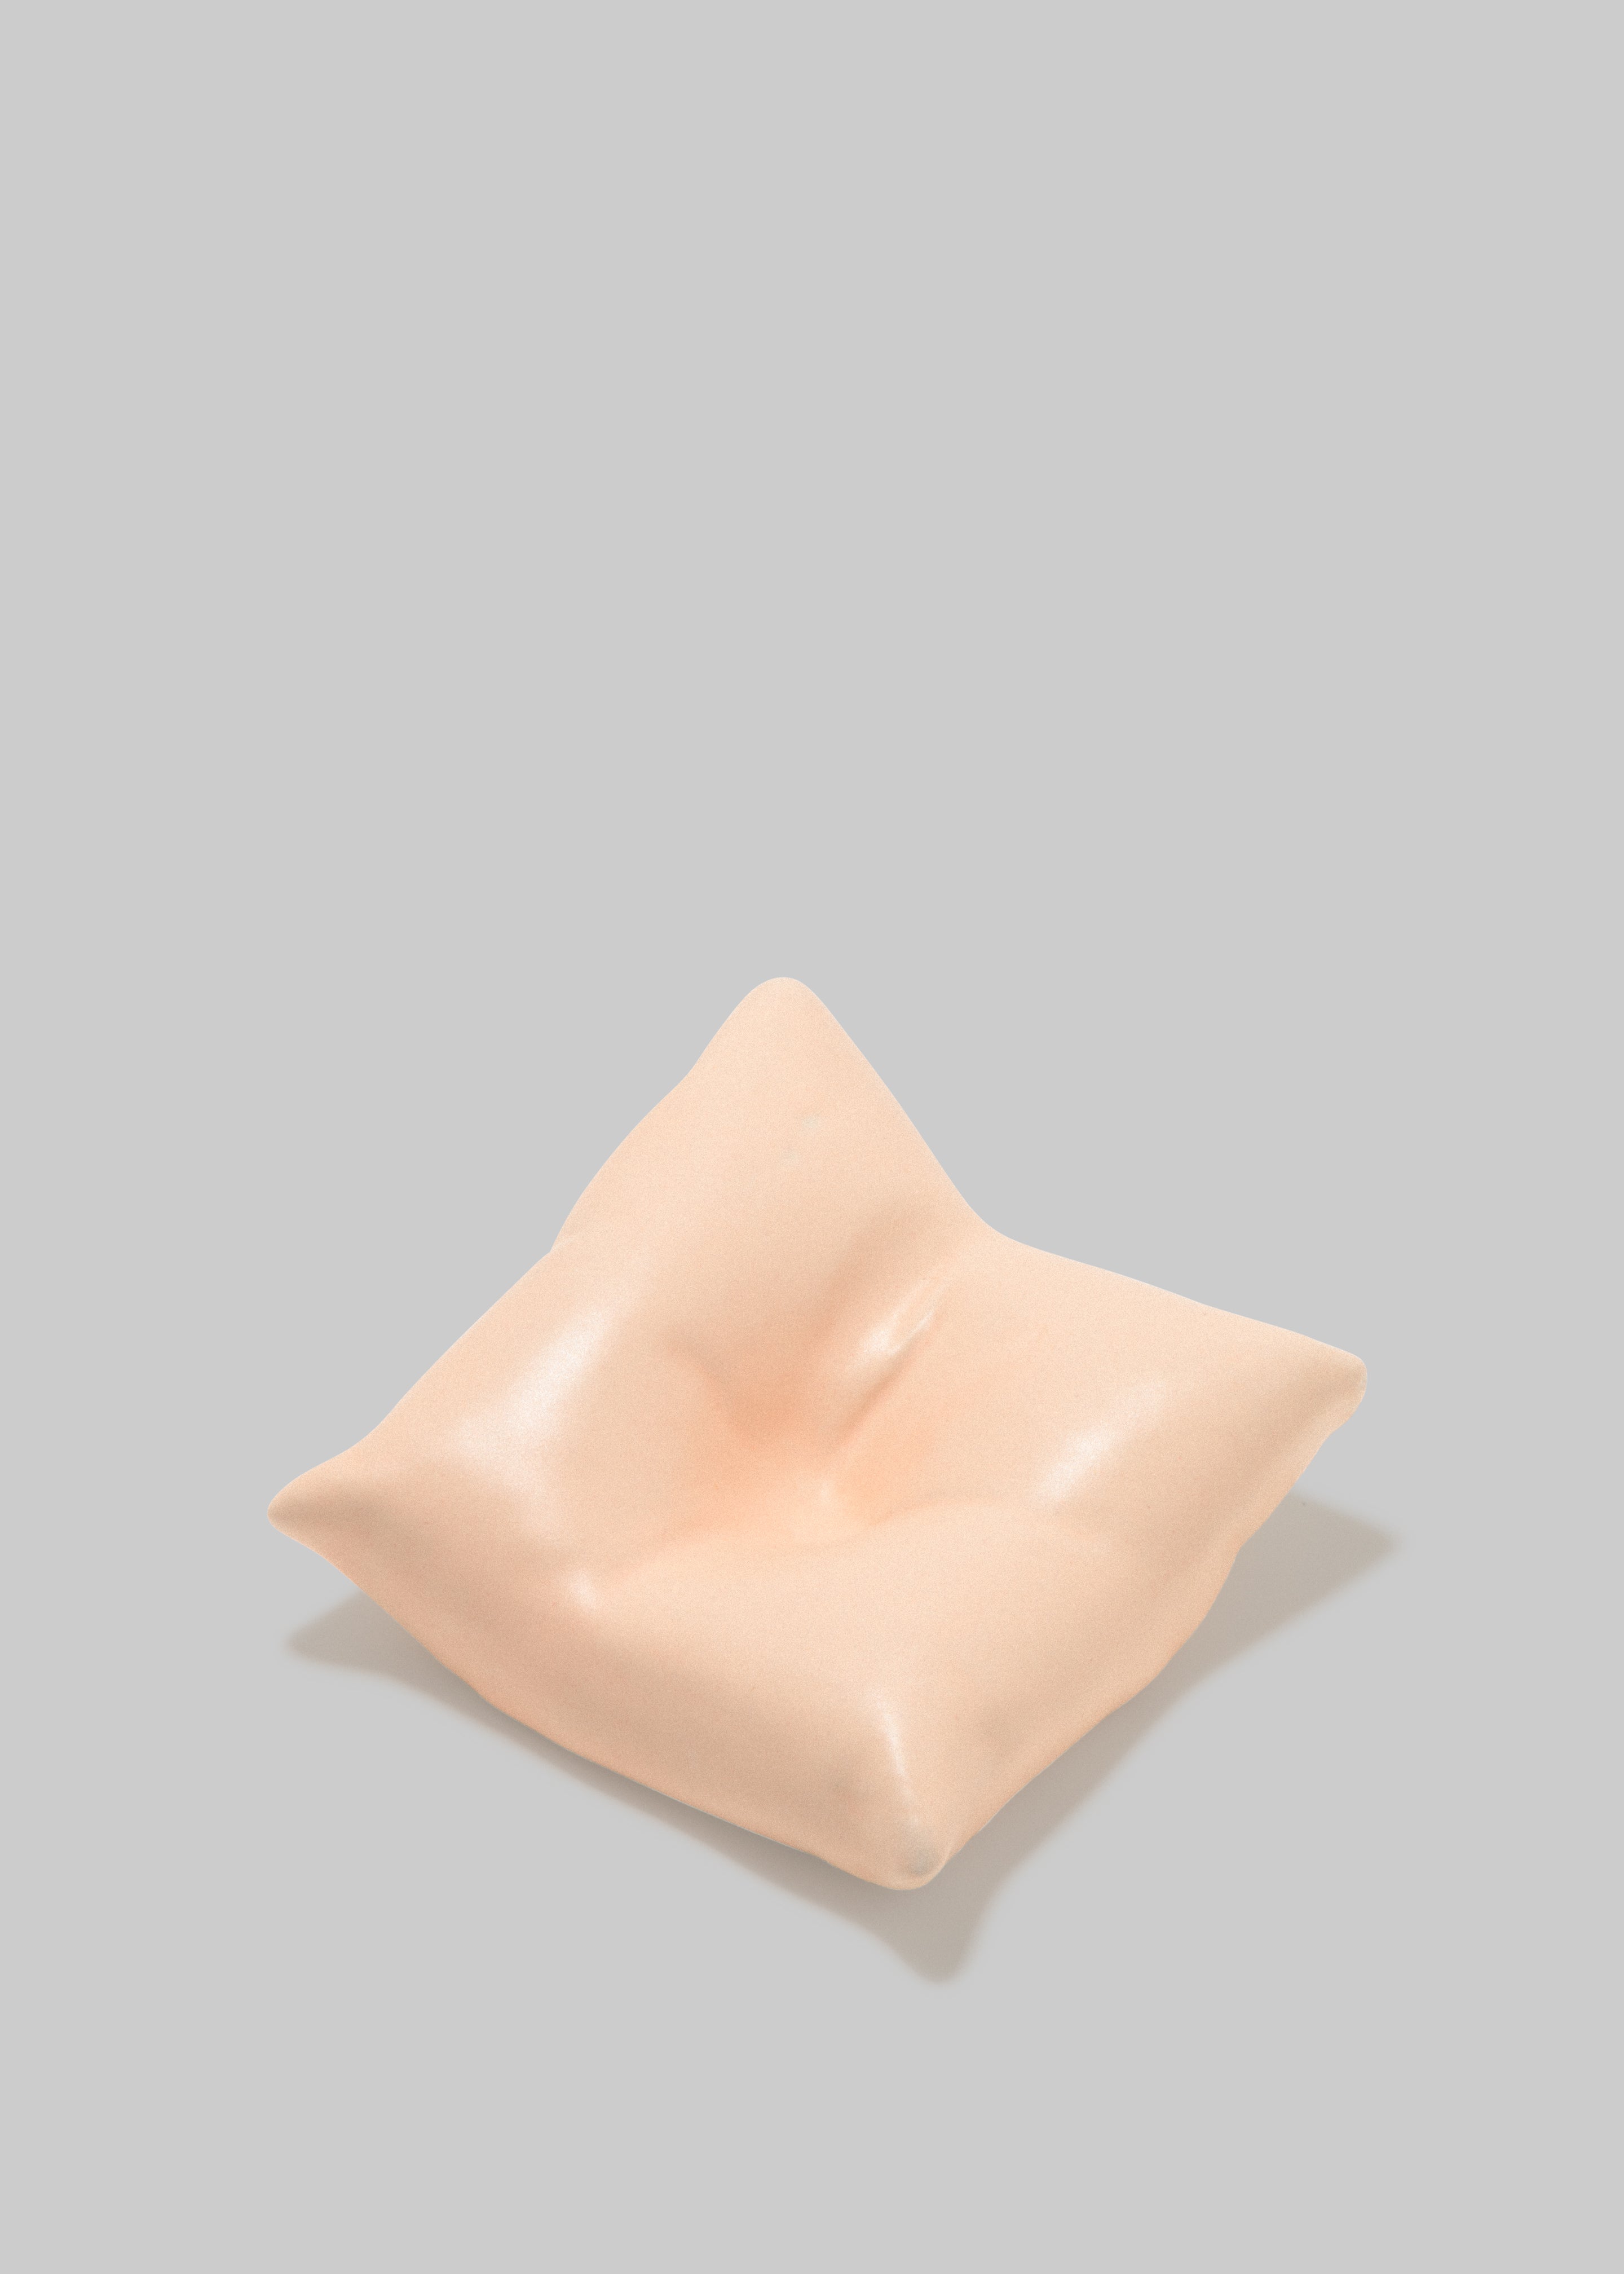 Completedworks Bumped II Ceramic Cushion - Matte Pale Peach - 3